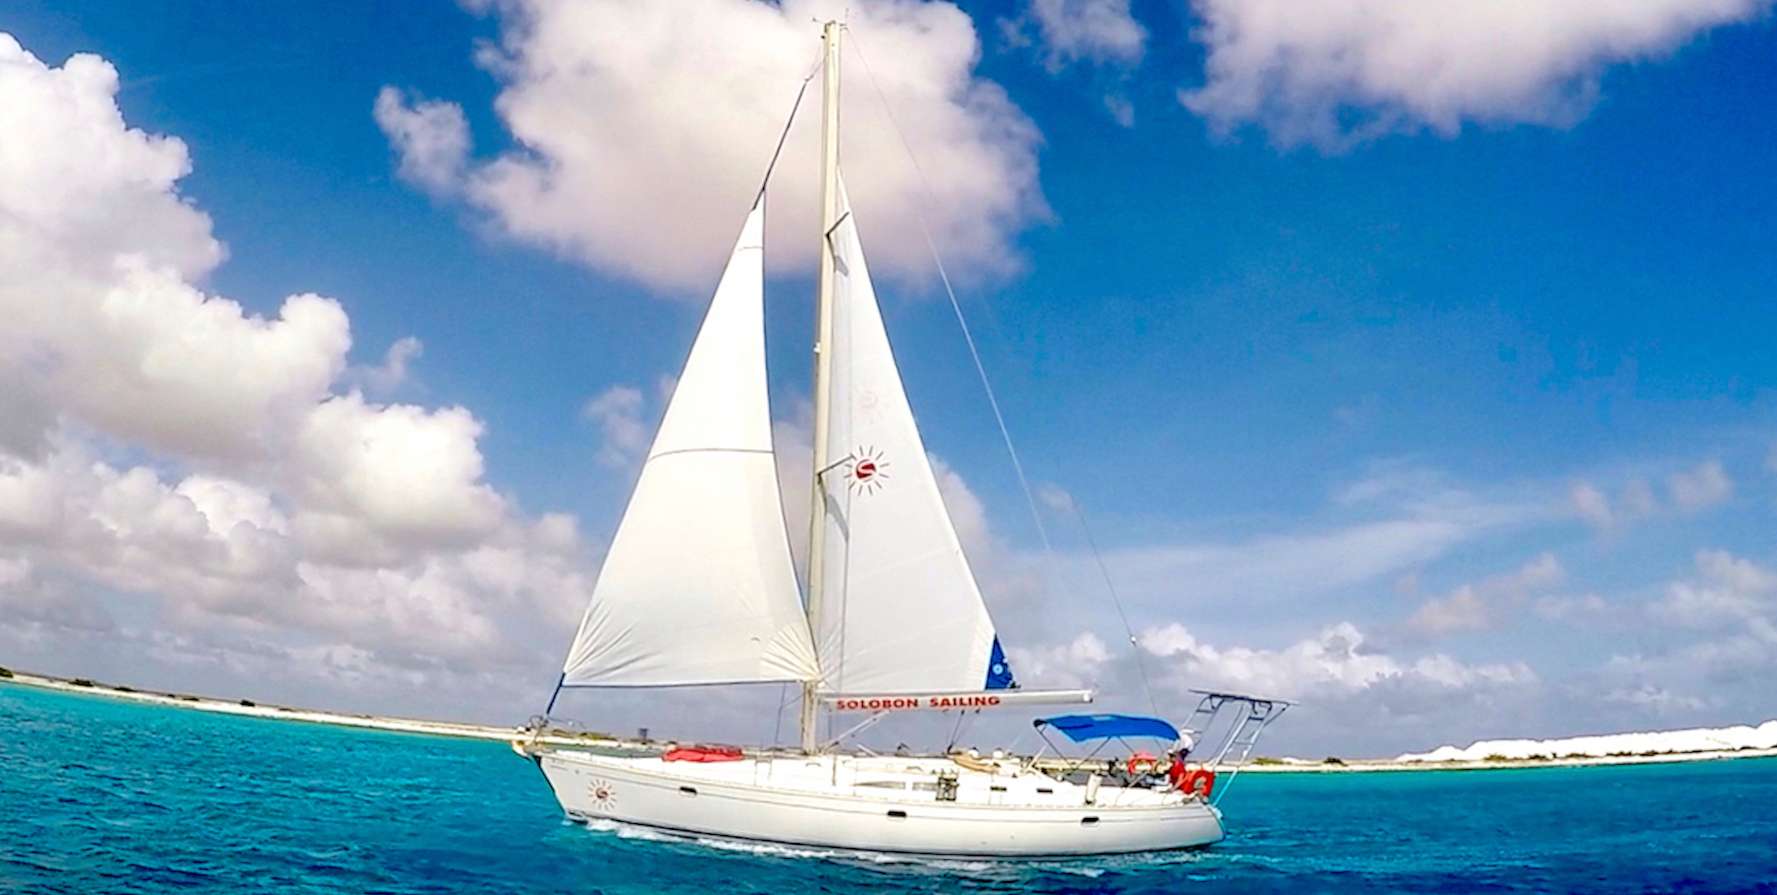 Sun Odyssey 45.2 - Yacht Charter Netherlands Antilles & Boat hire in Netherlands Antilles Bonaire Kralendijk Bonaire 1